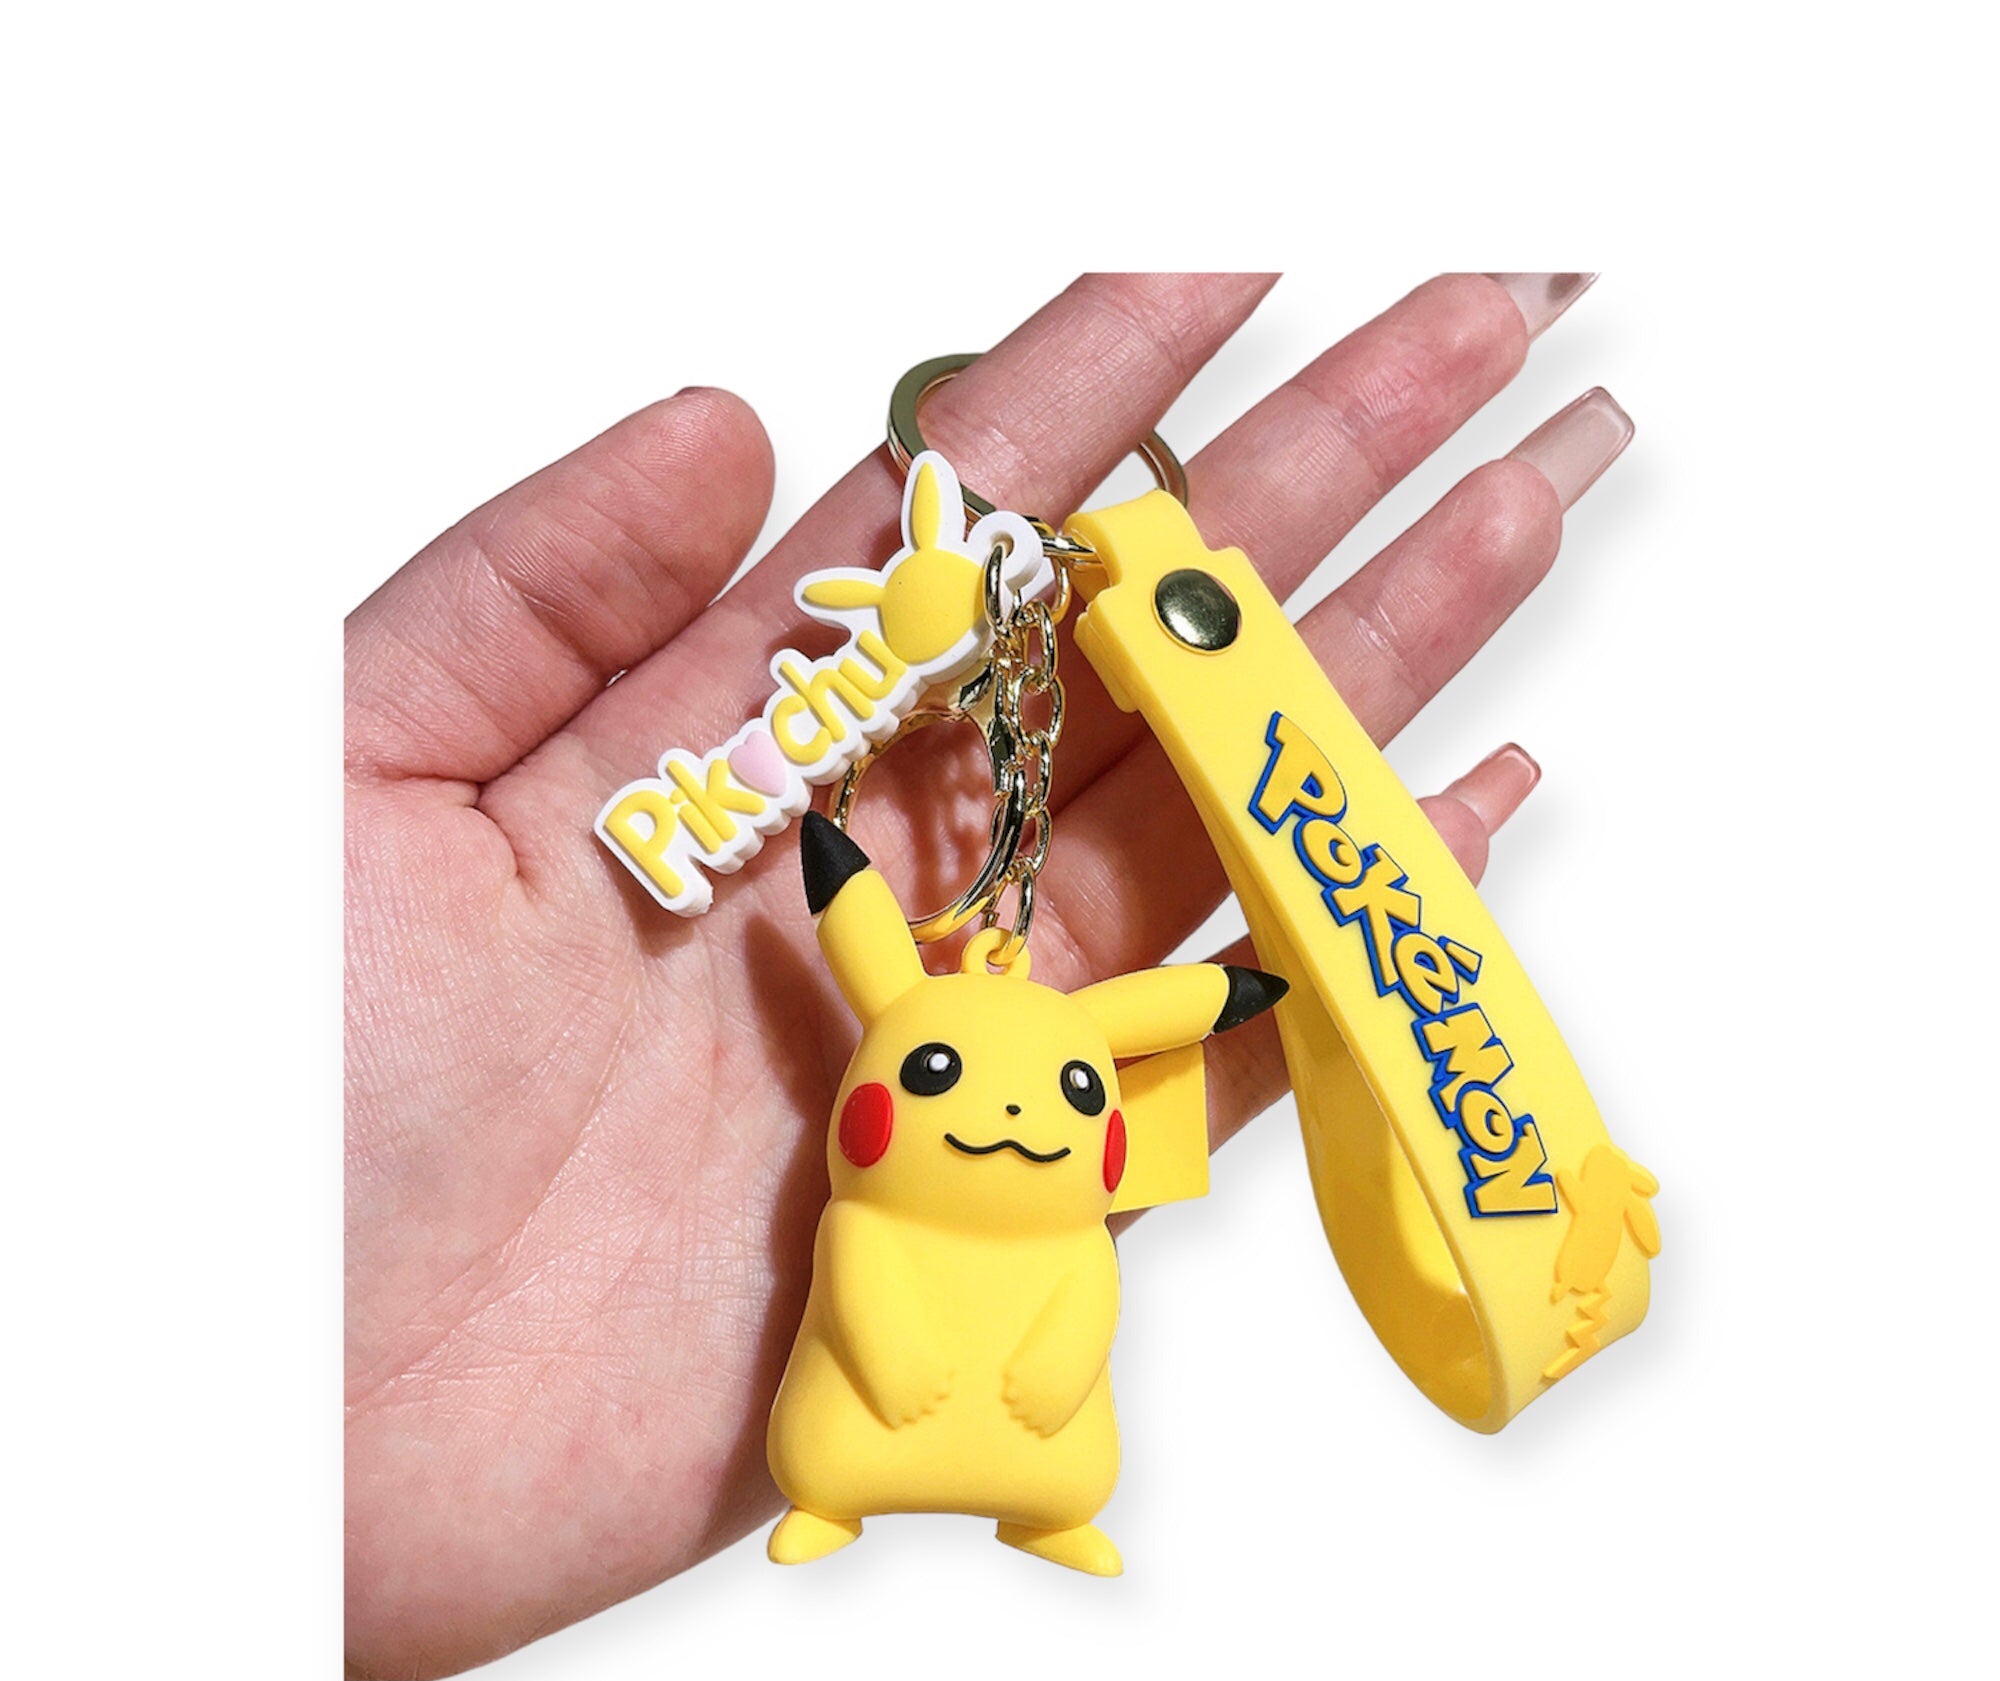 Pokémon keychains